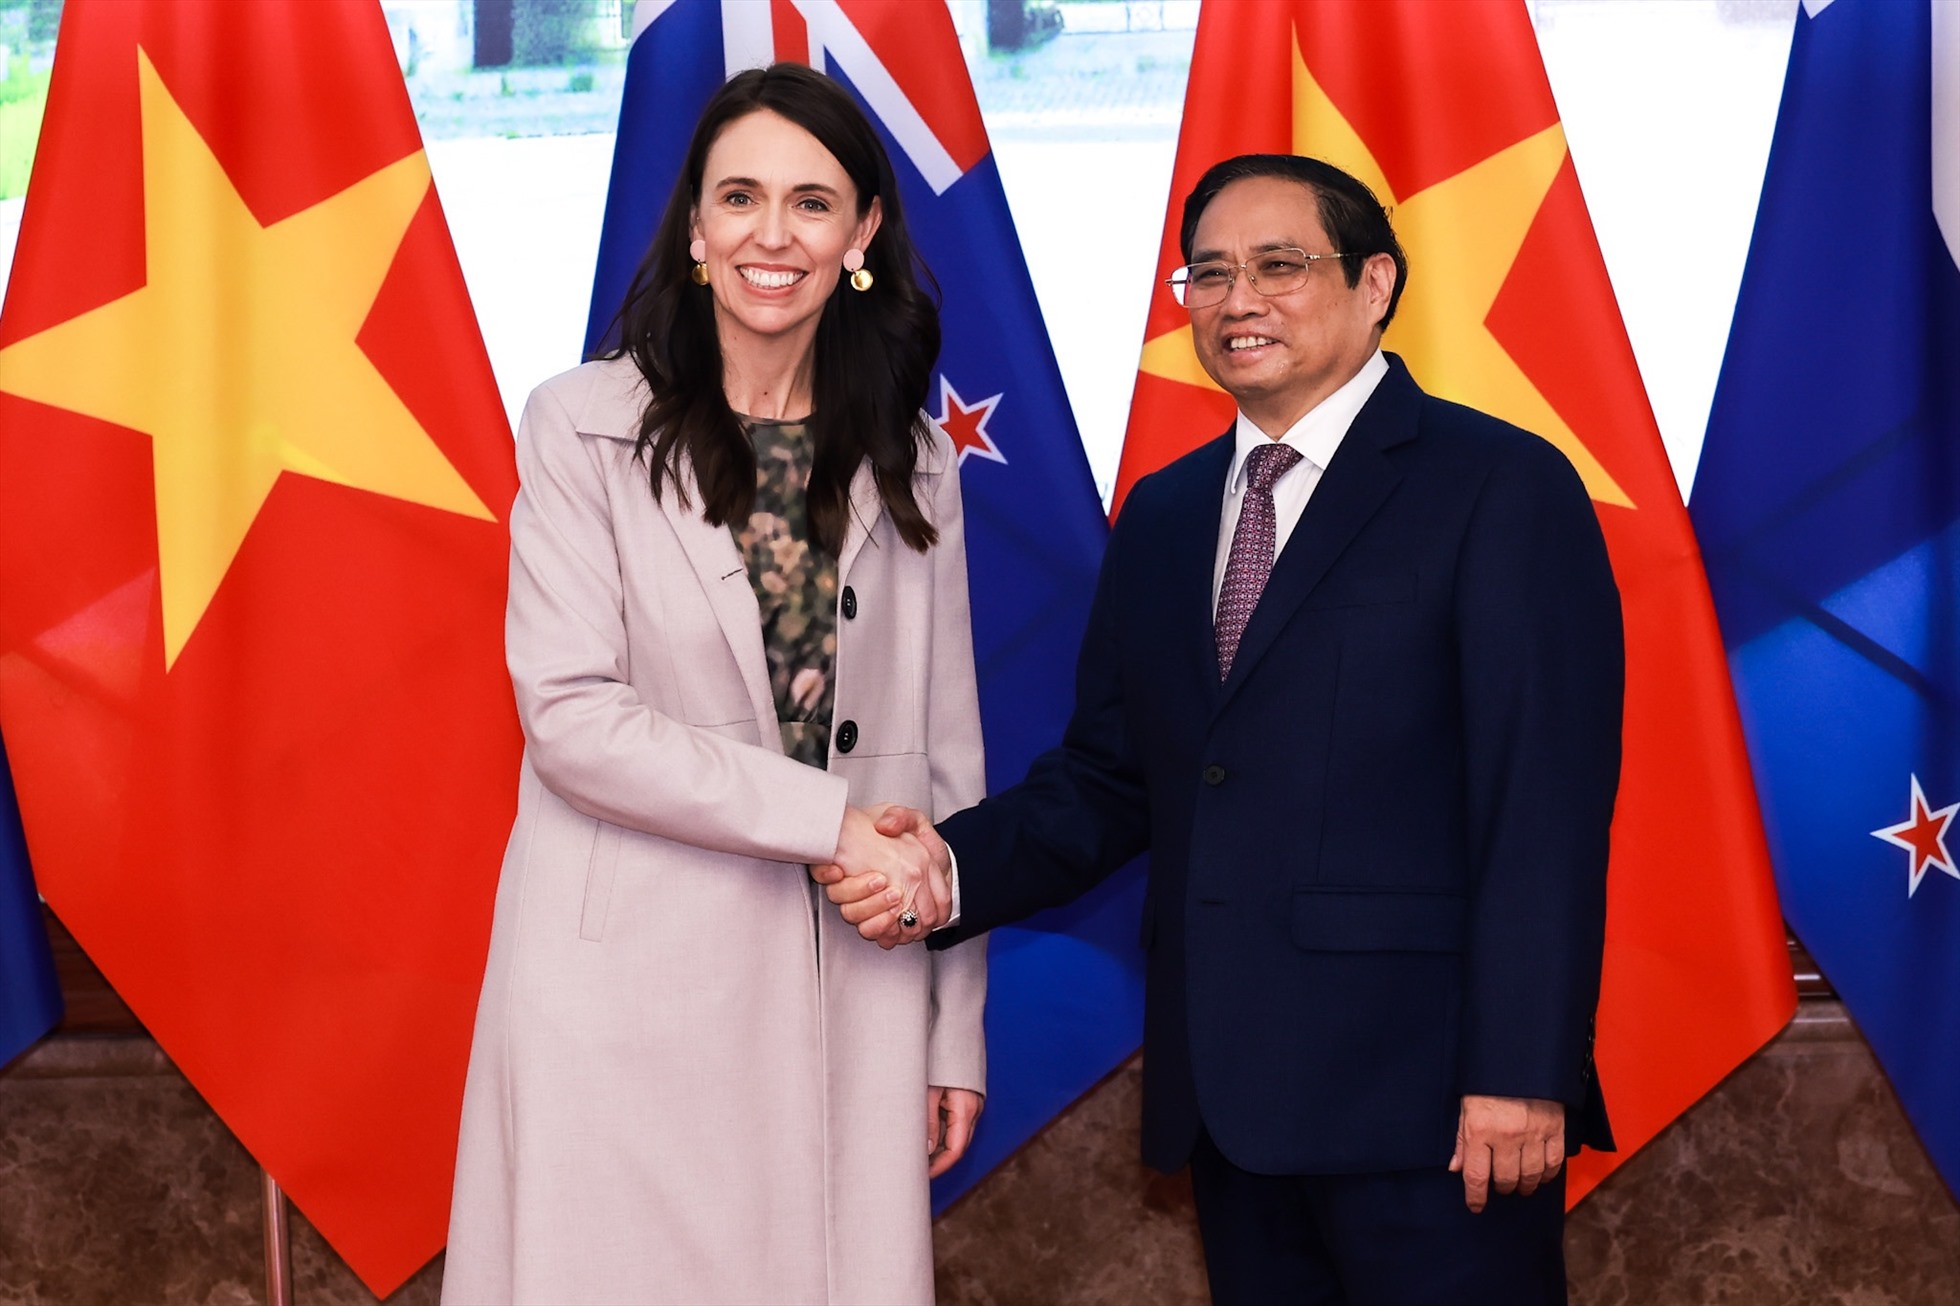 Đây là chuyến thăm chính thức đầu tiên của Thủ tướng New Zealand Jacinda Ardern tới Việt Nam kể từ khi bà được bổ nhiệm làm Thủ tướng. Ảnh: Hải Nguyễn